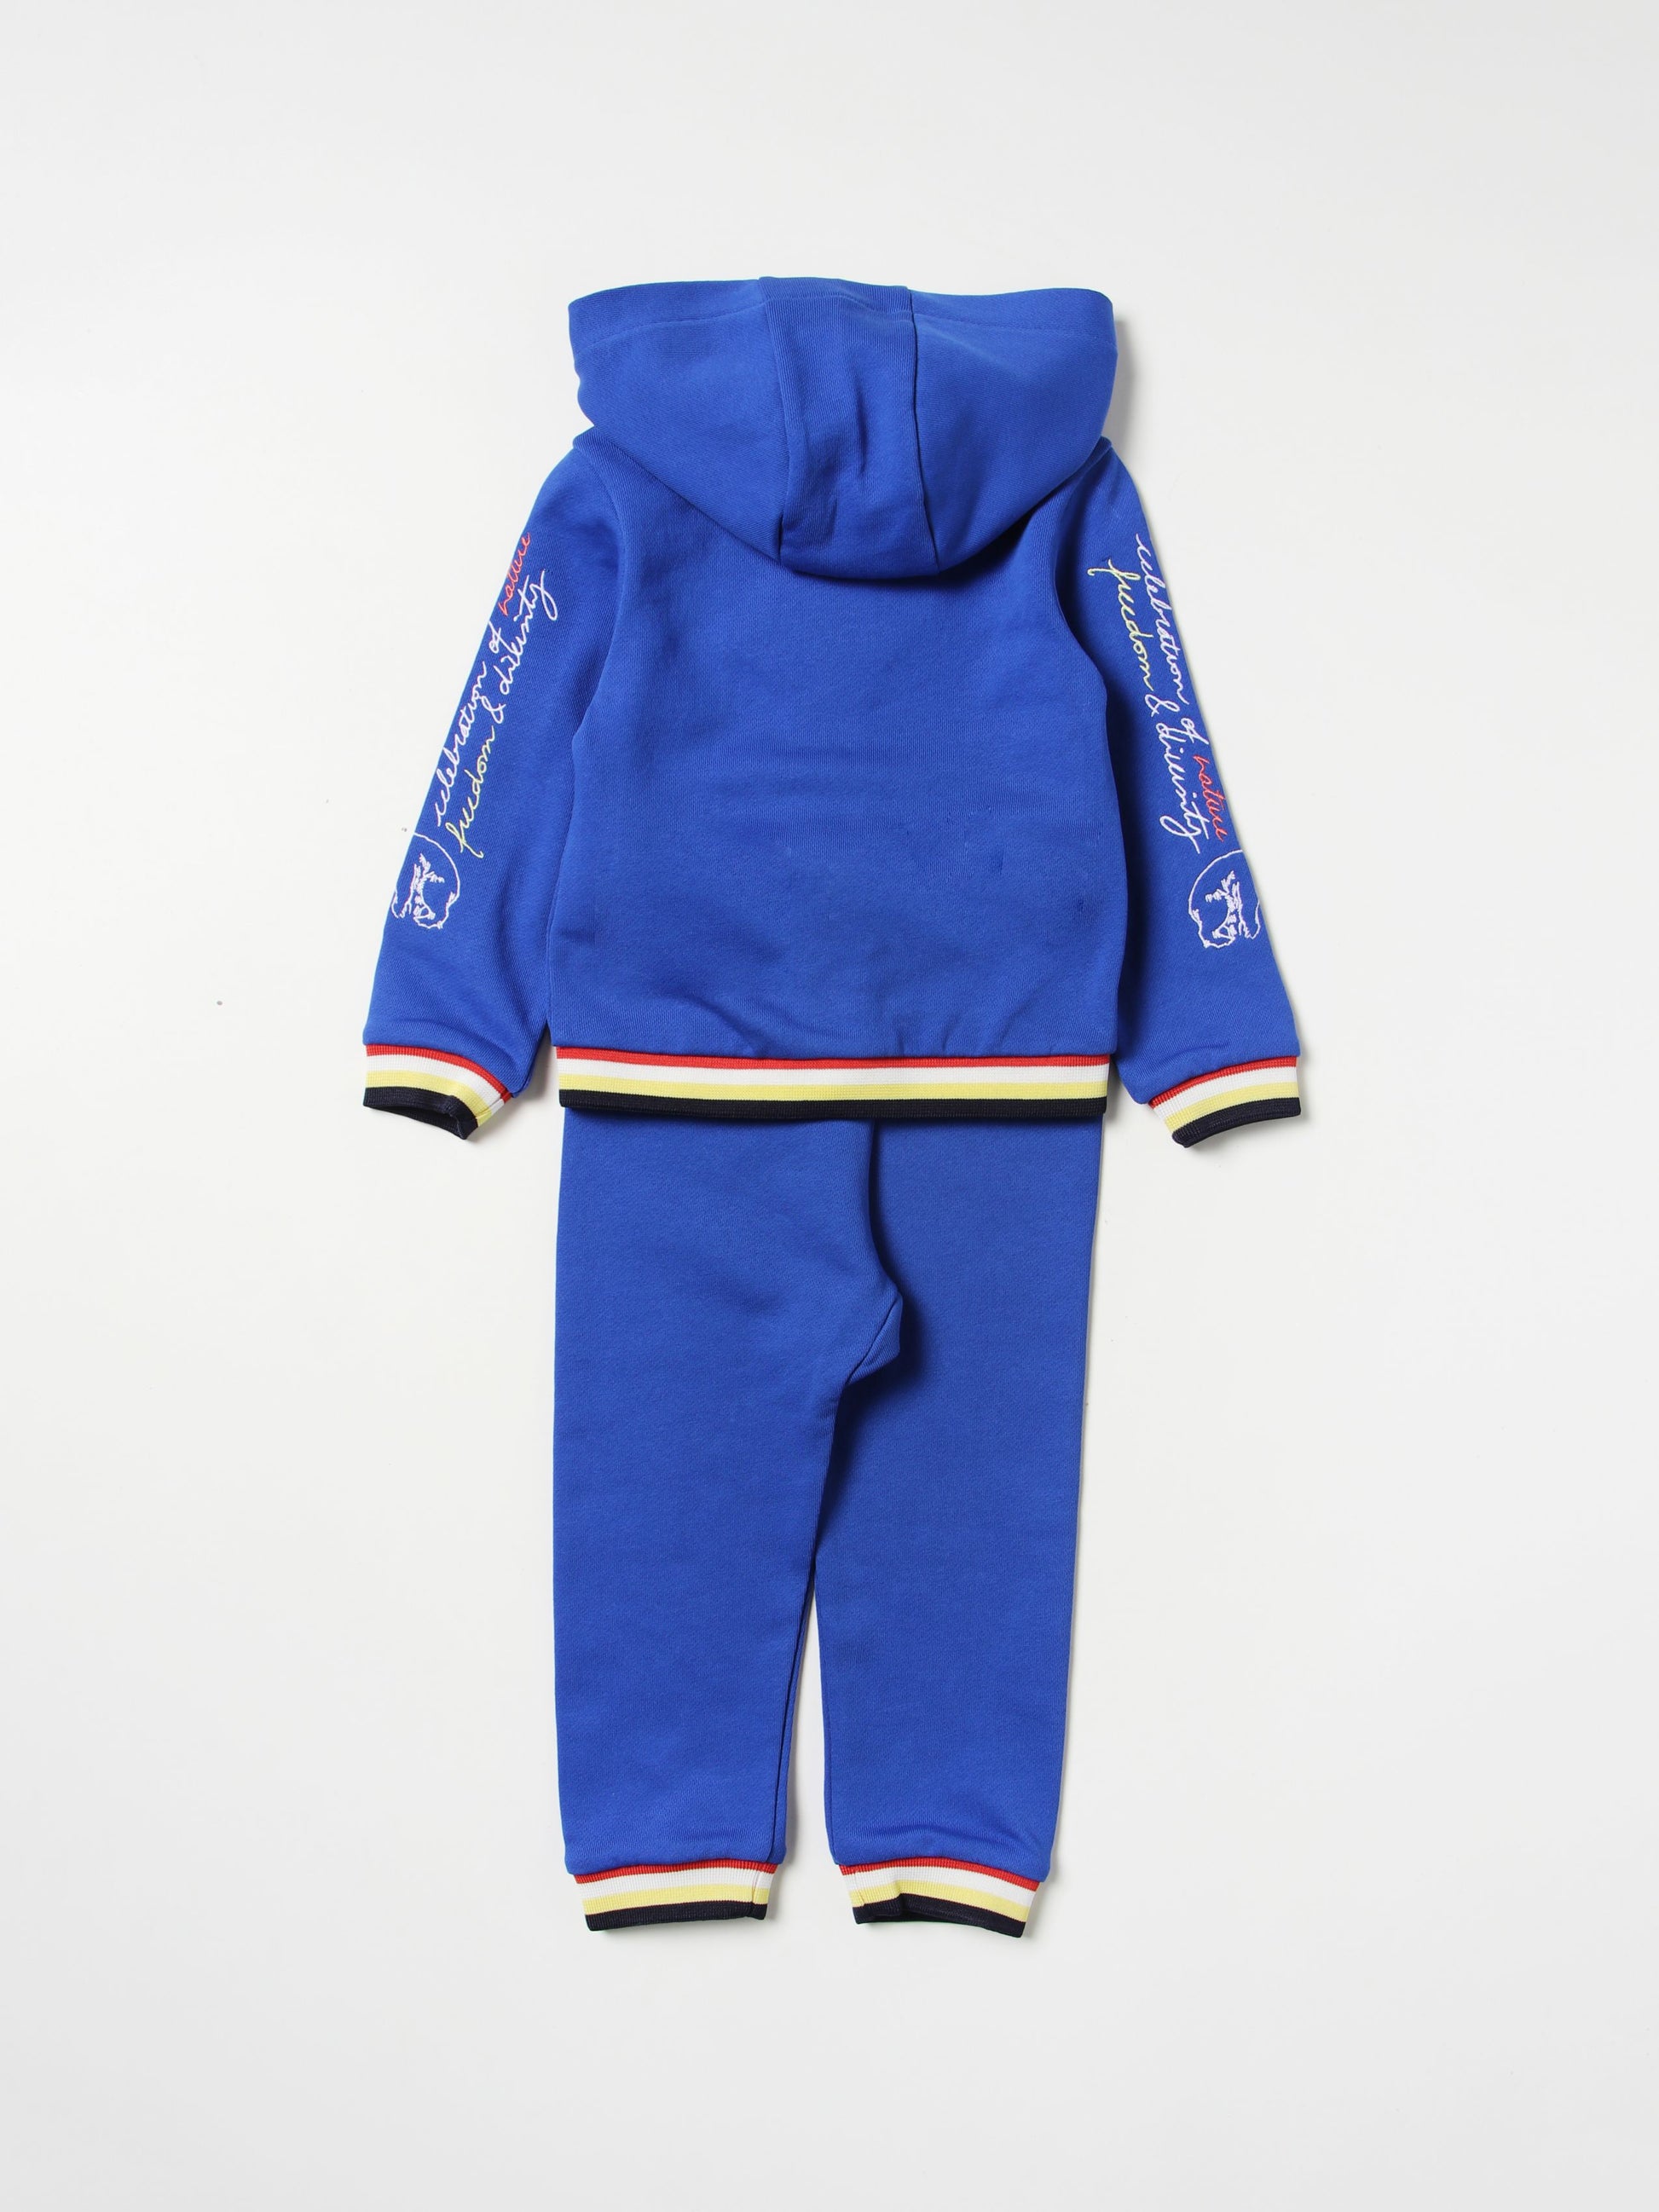 Kenzo Kid's Jogging Suit - Color: Blue - Kids Premium Clothing -